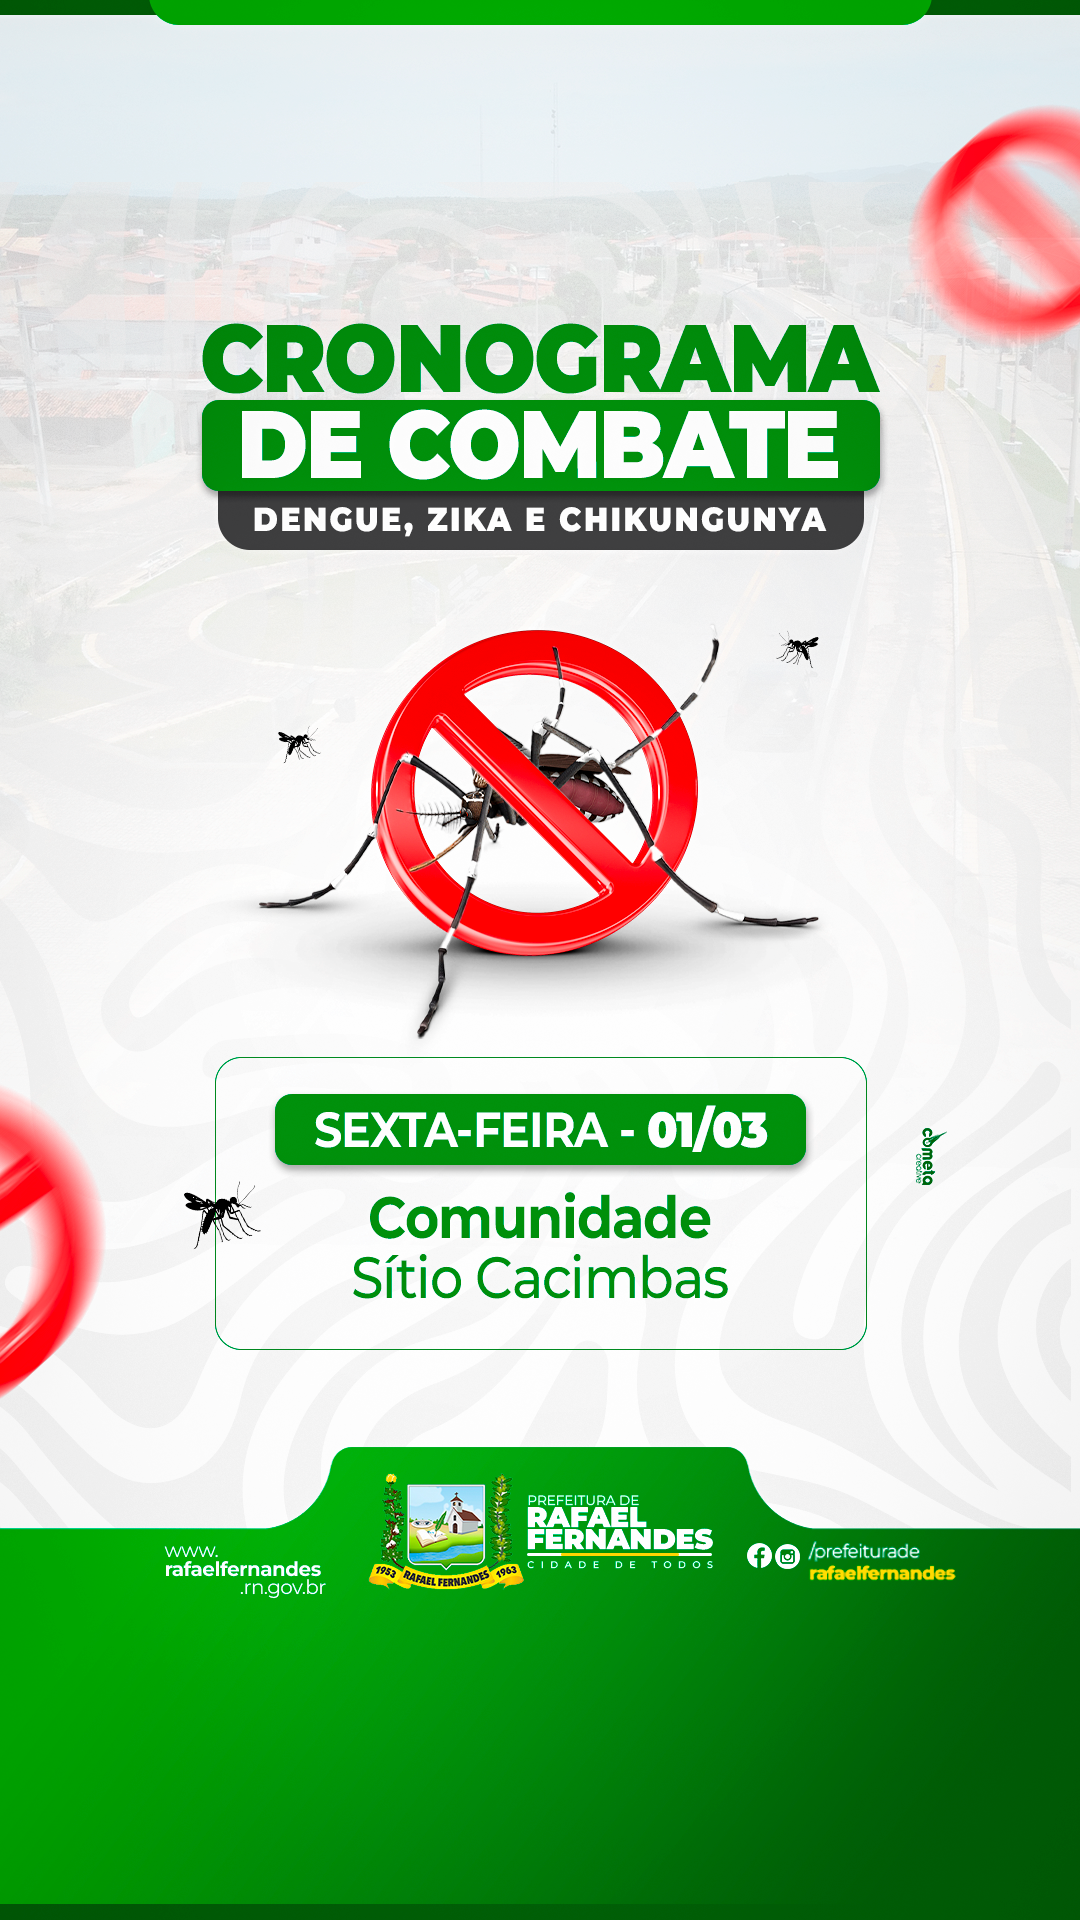 Sec. Municipal de Saúde realizará multirão de combate à Dengue, confira o cronograma!